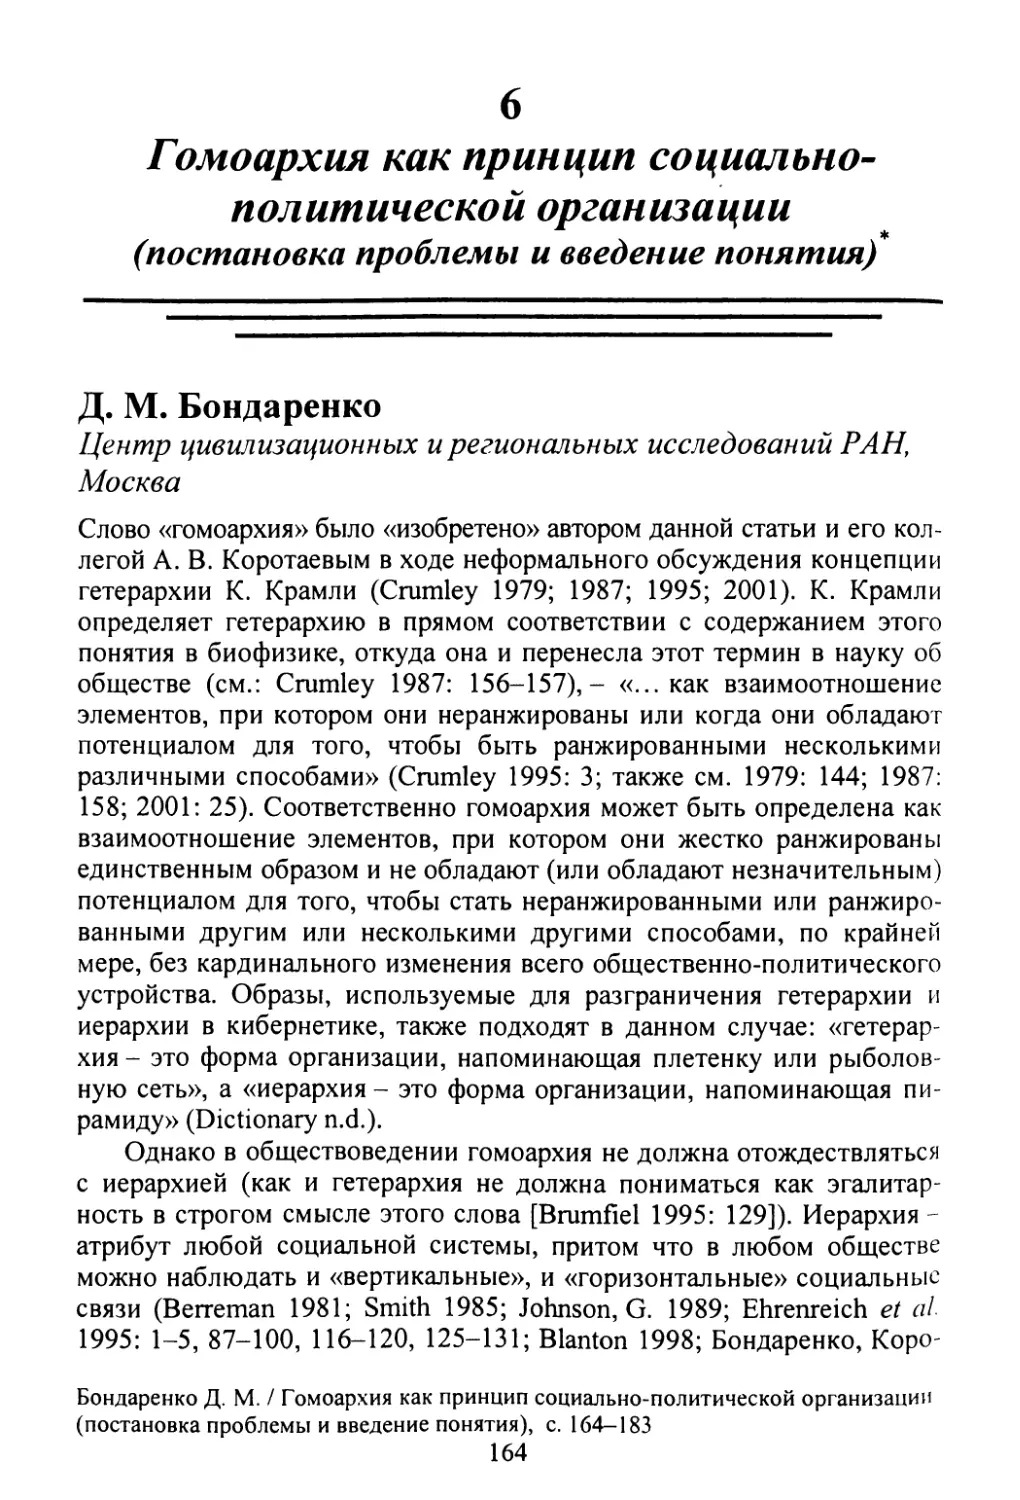 Д.М. Бондаренко. Гомоархия как принцип социально-политической организации